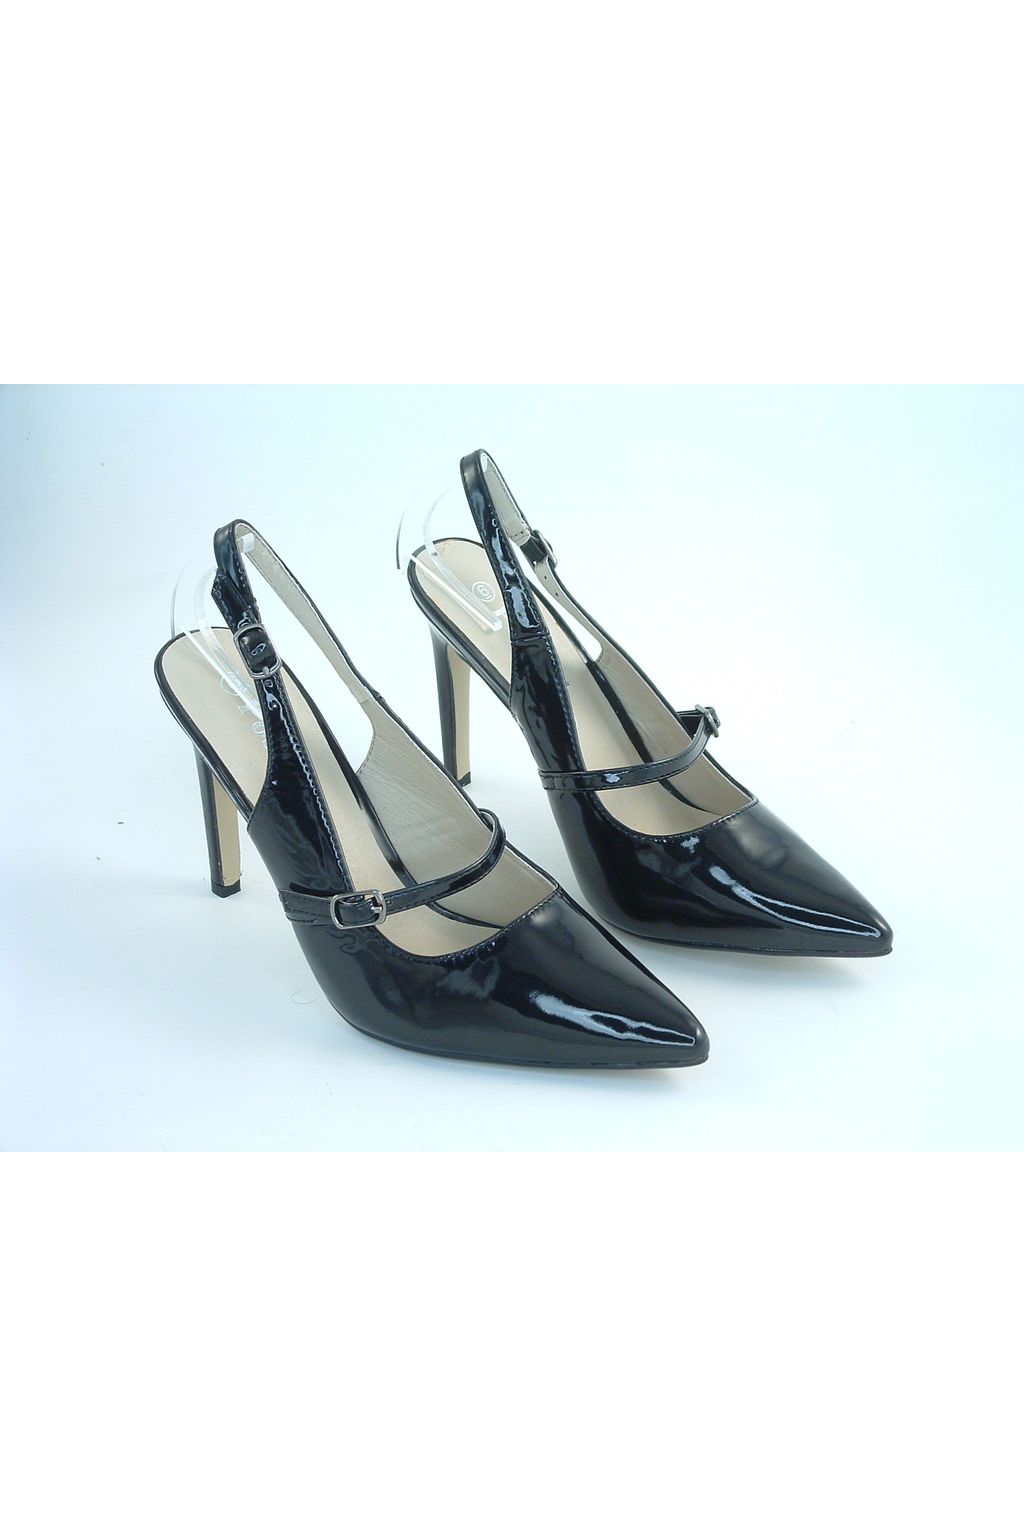 Divine Black Patent Shoes Divine1694